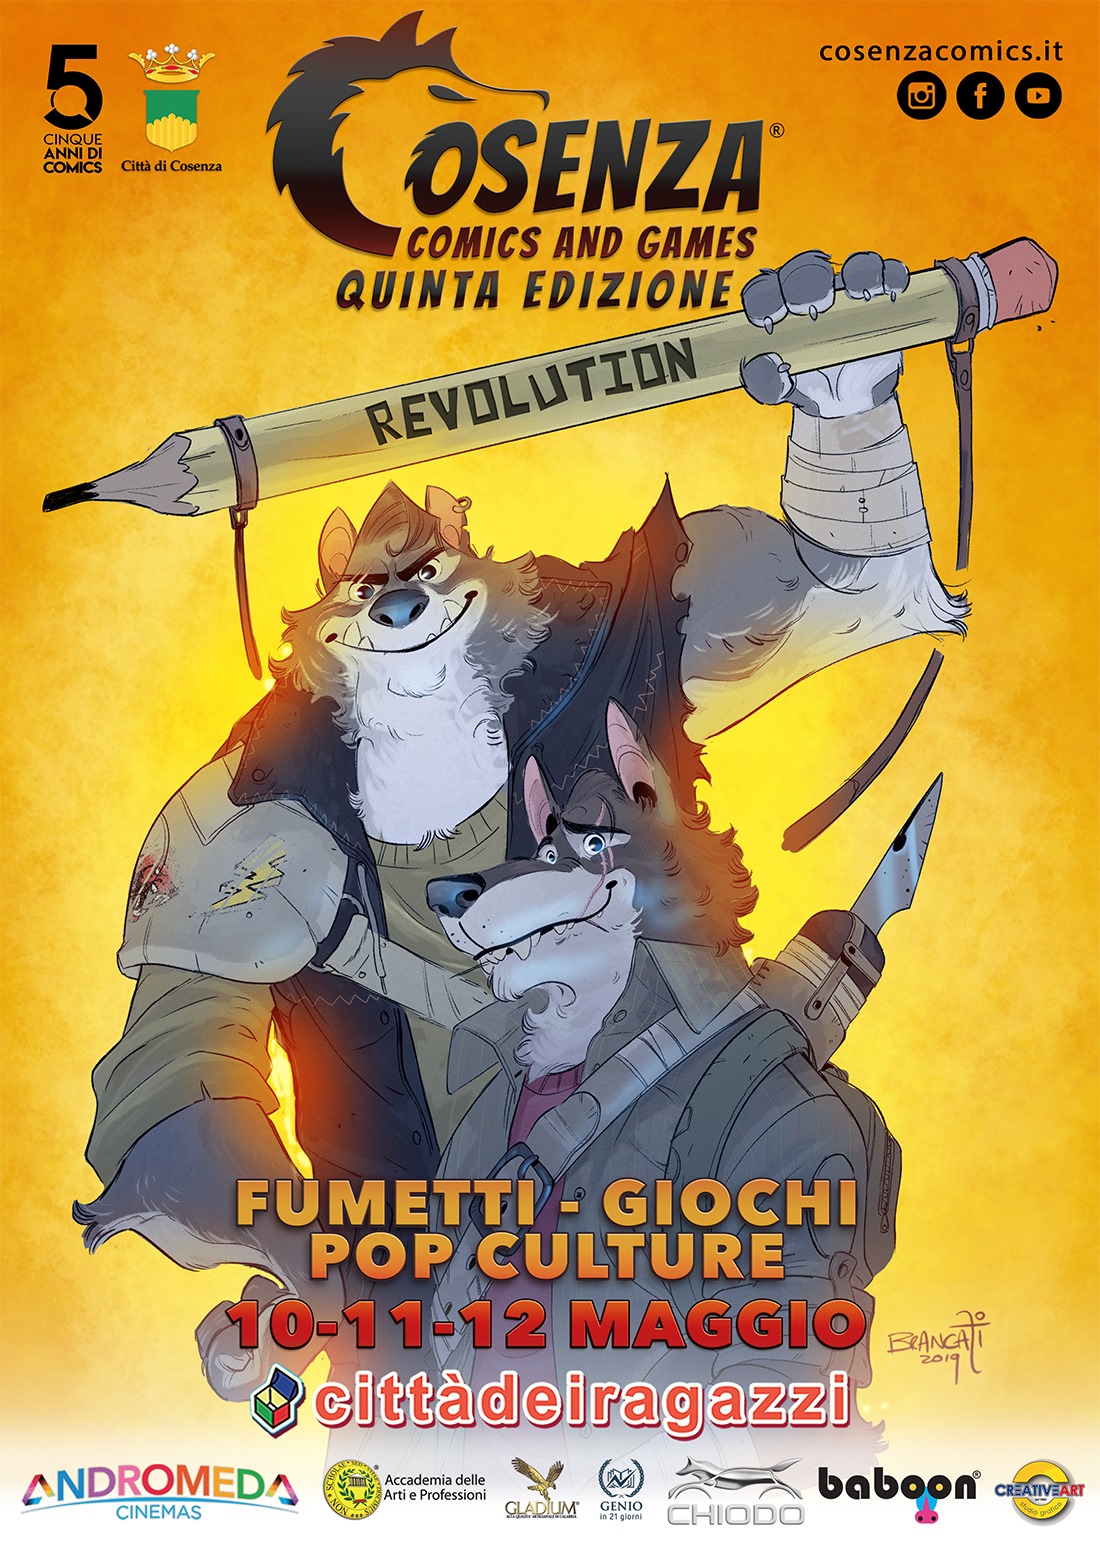 La locandina di Cosenza Comics and Games: Revolution